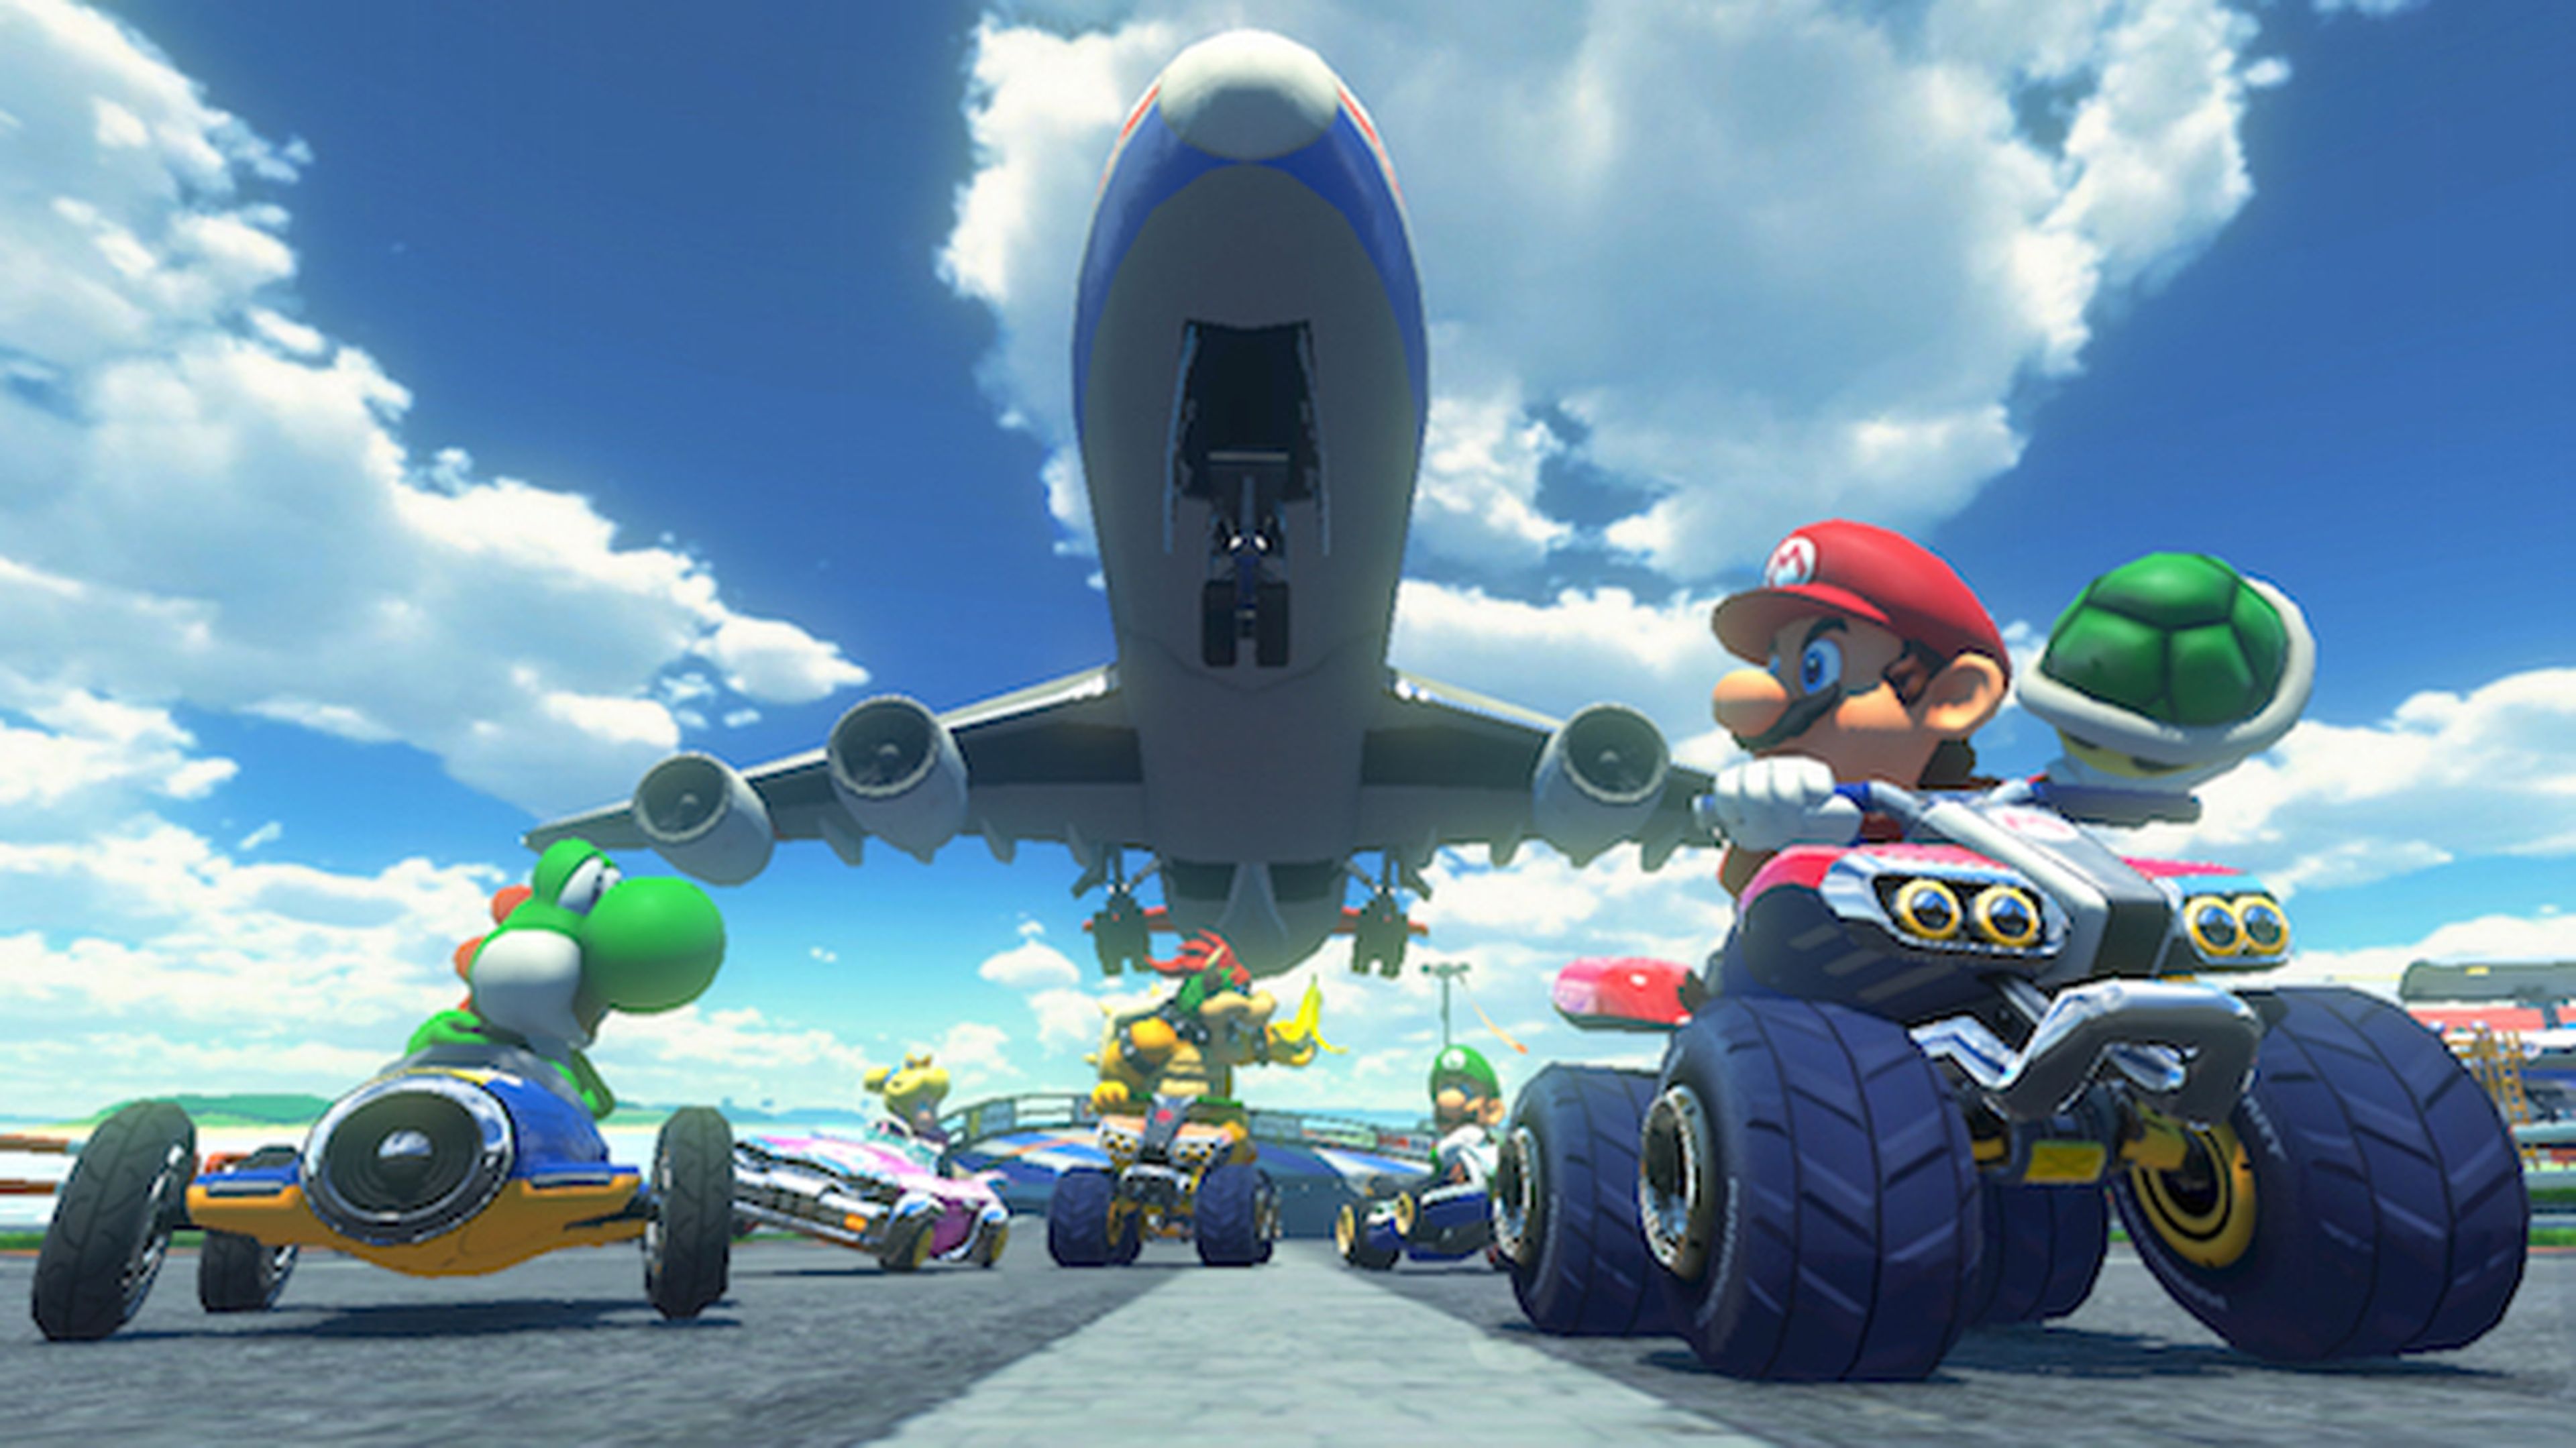 Gana una Wii U + Mario Kart 8 gracias a Autobild